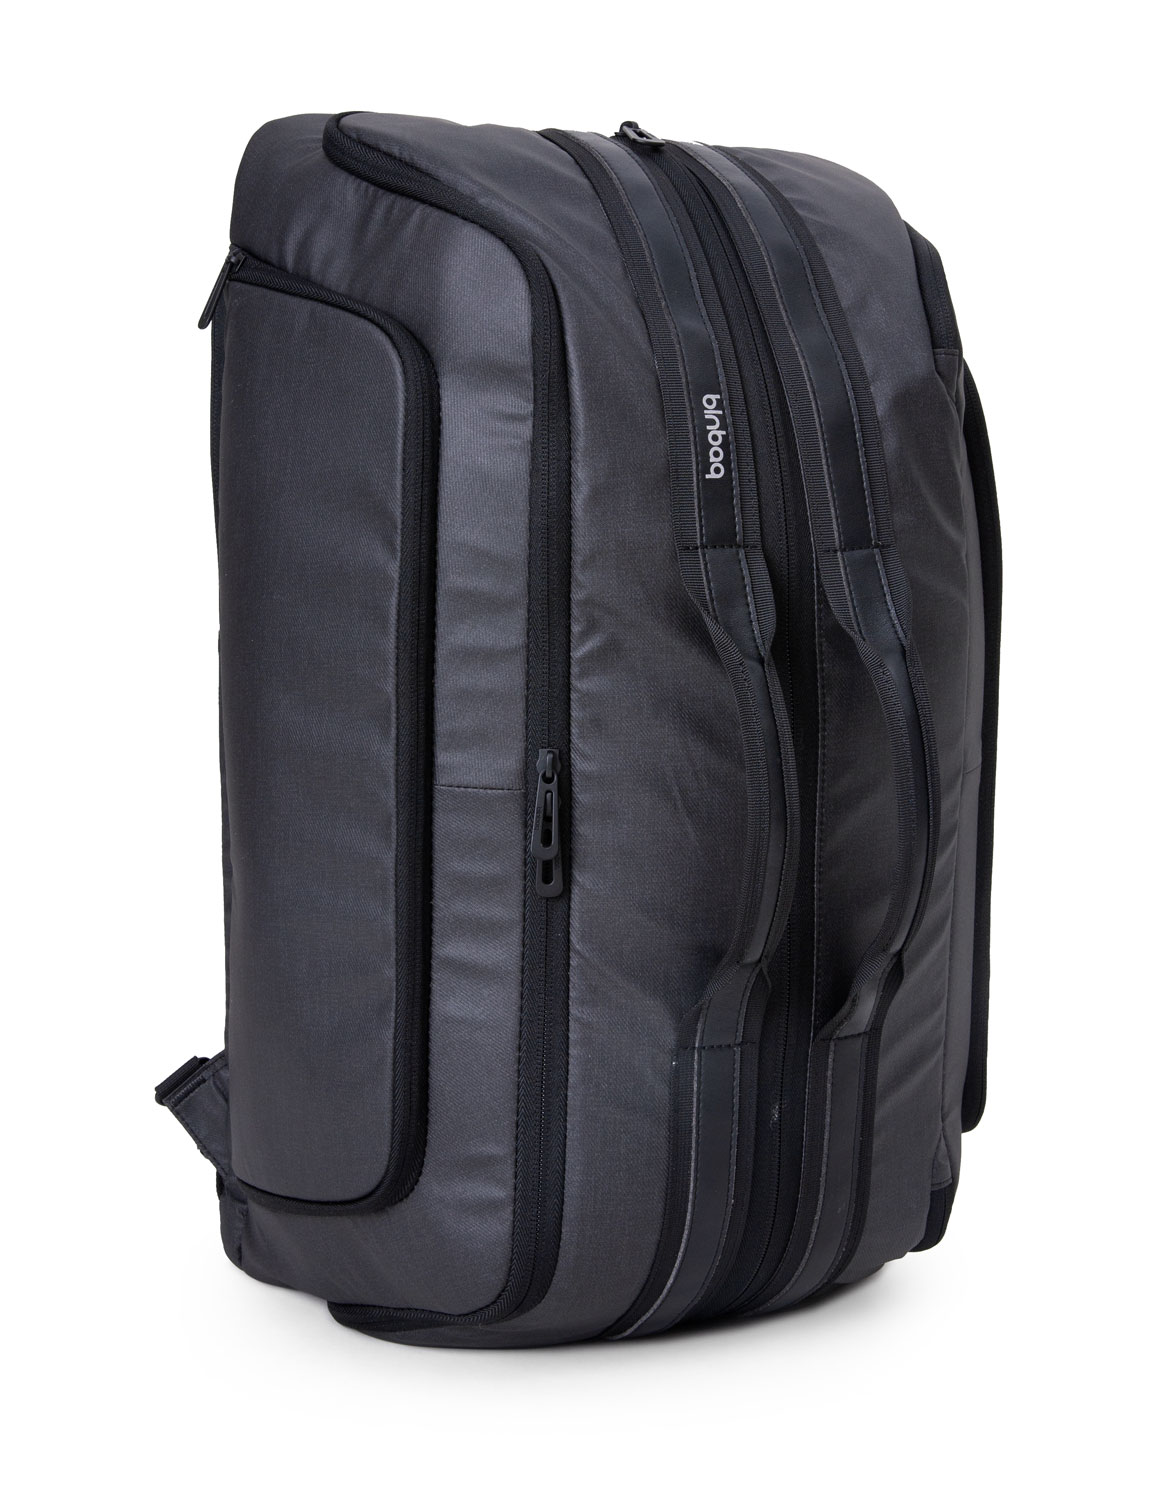 BLNBAG M2 – Handgepäck Reiserucksack Reisetasche 2 in 1 wandelbar, Laptopfach, RFID, USB, 40 Liter